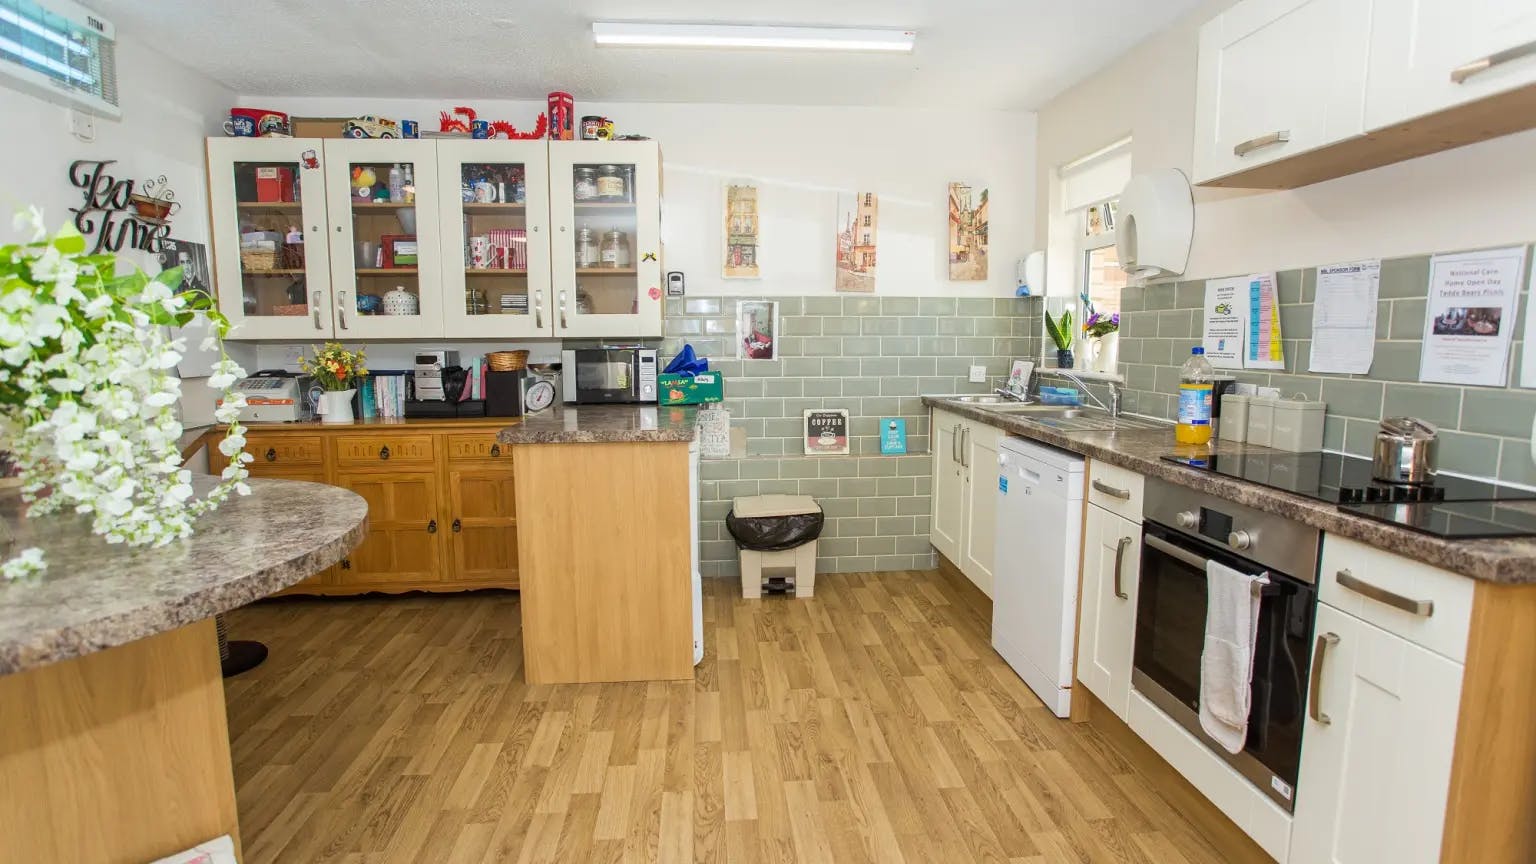 Kitchen of Moutnbatten Lodge care home in Hemel Hempstead, Hertfordshire